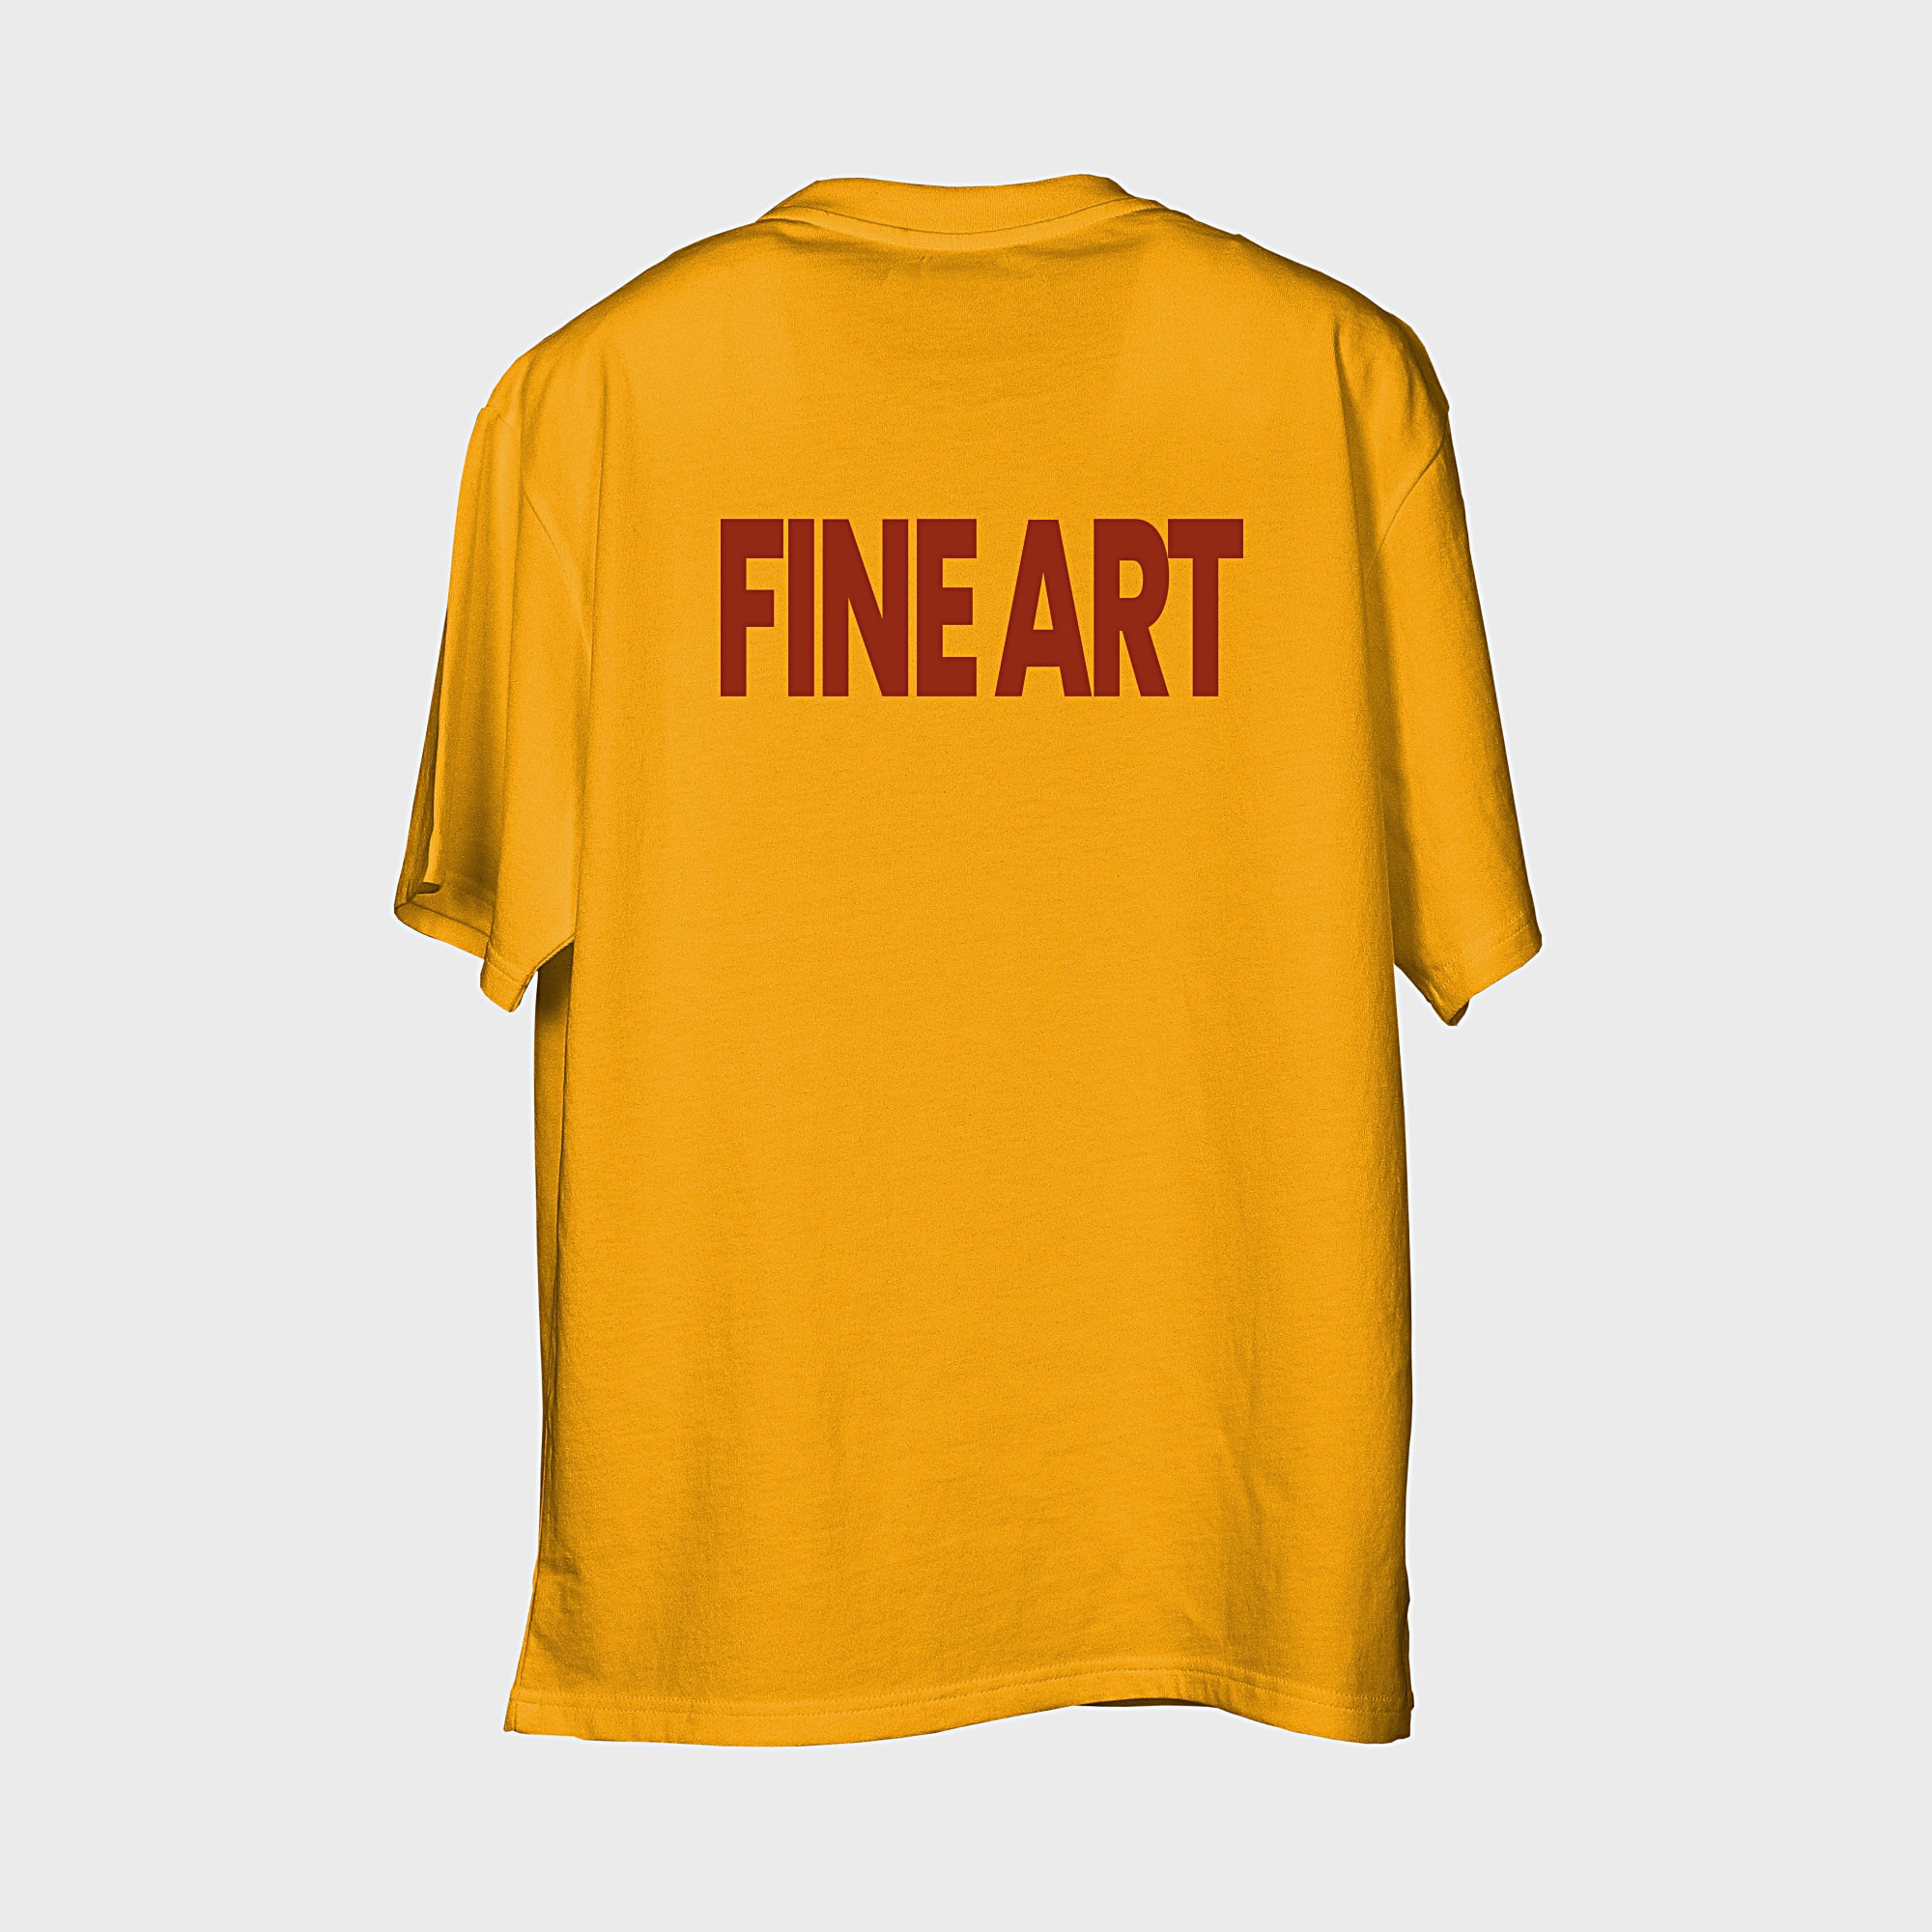 Fine Art T-shirt : Mustard